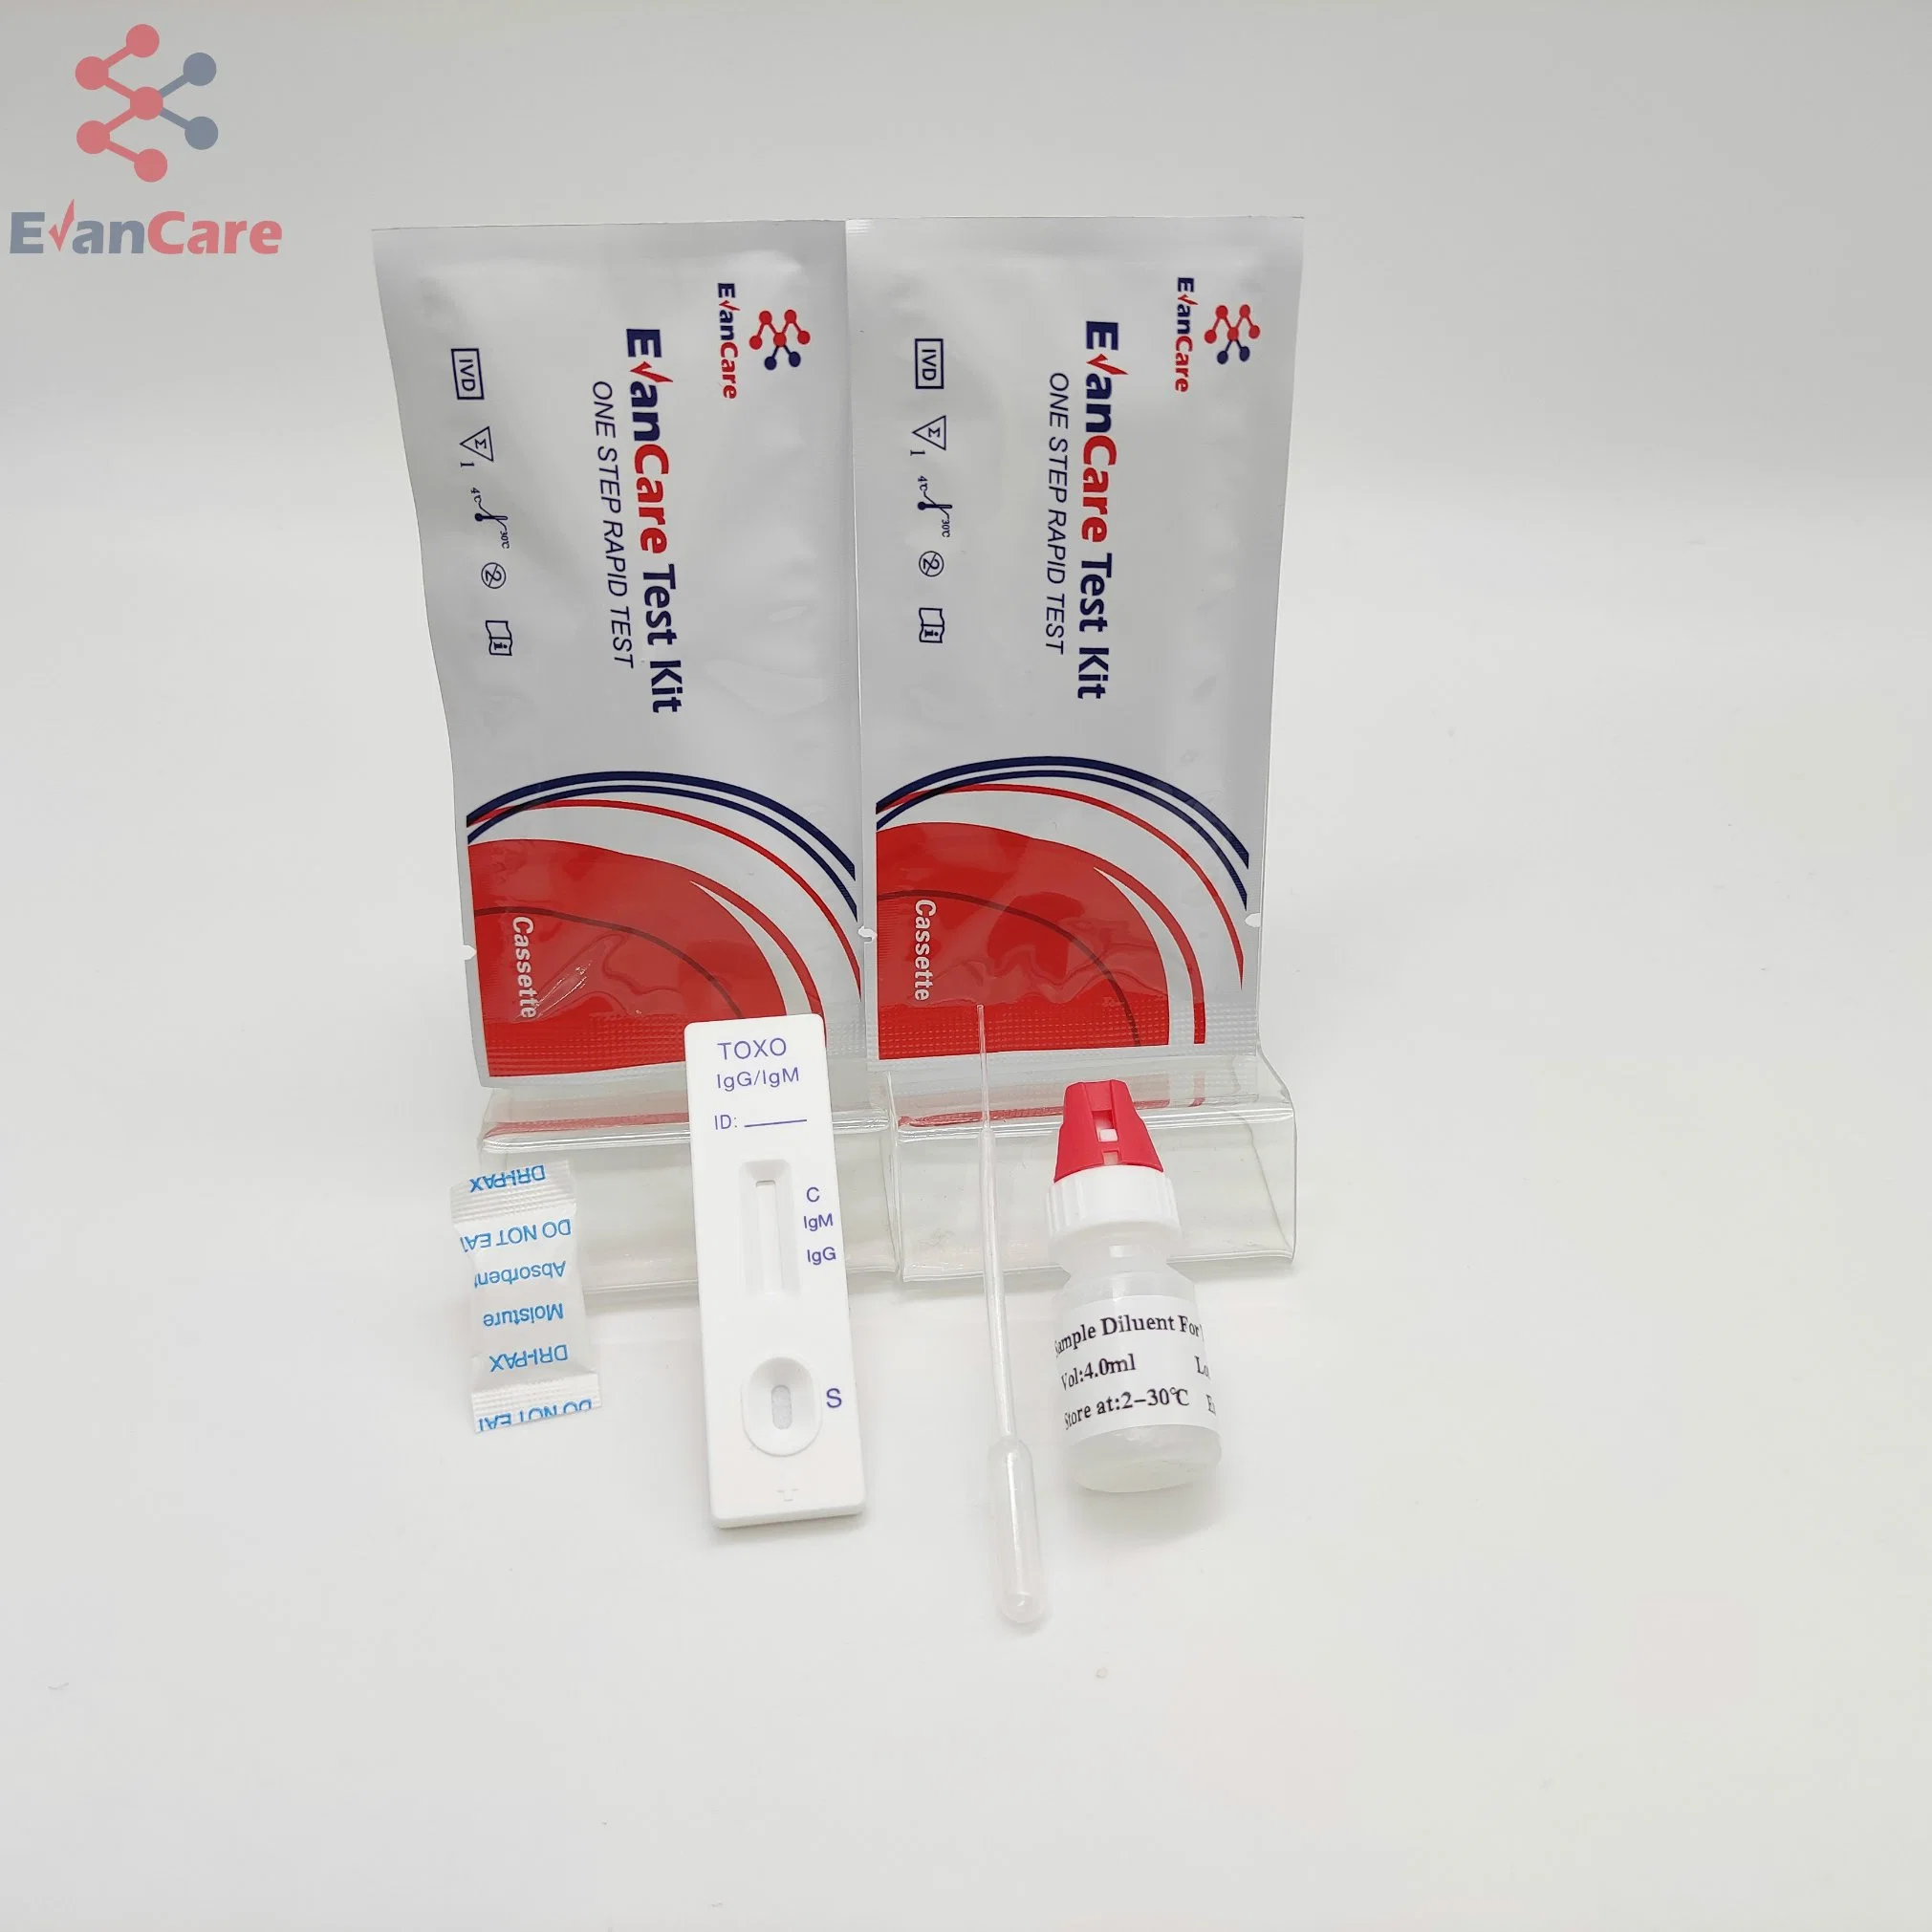 Cassette de test de toxicité précise / Test rapide de toxicité pour diagnostic médical / cassette de test rapide à débit latéral